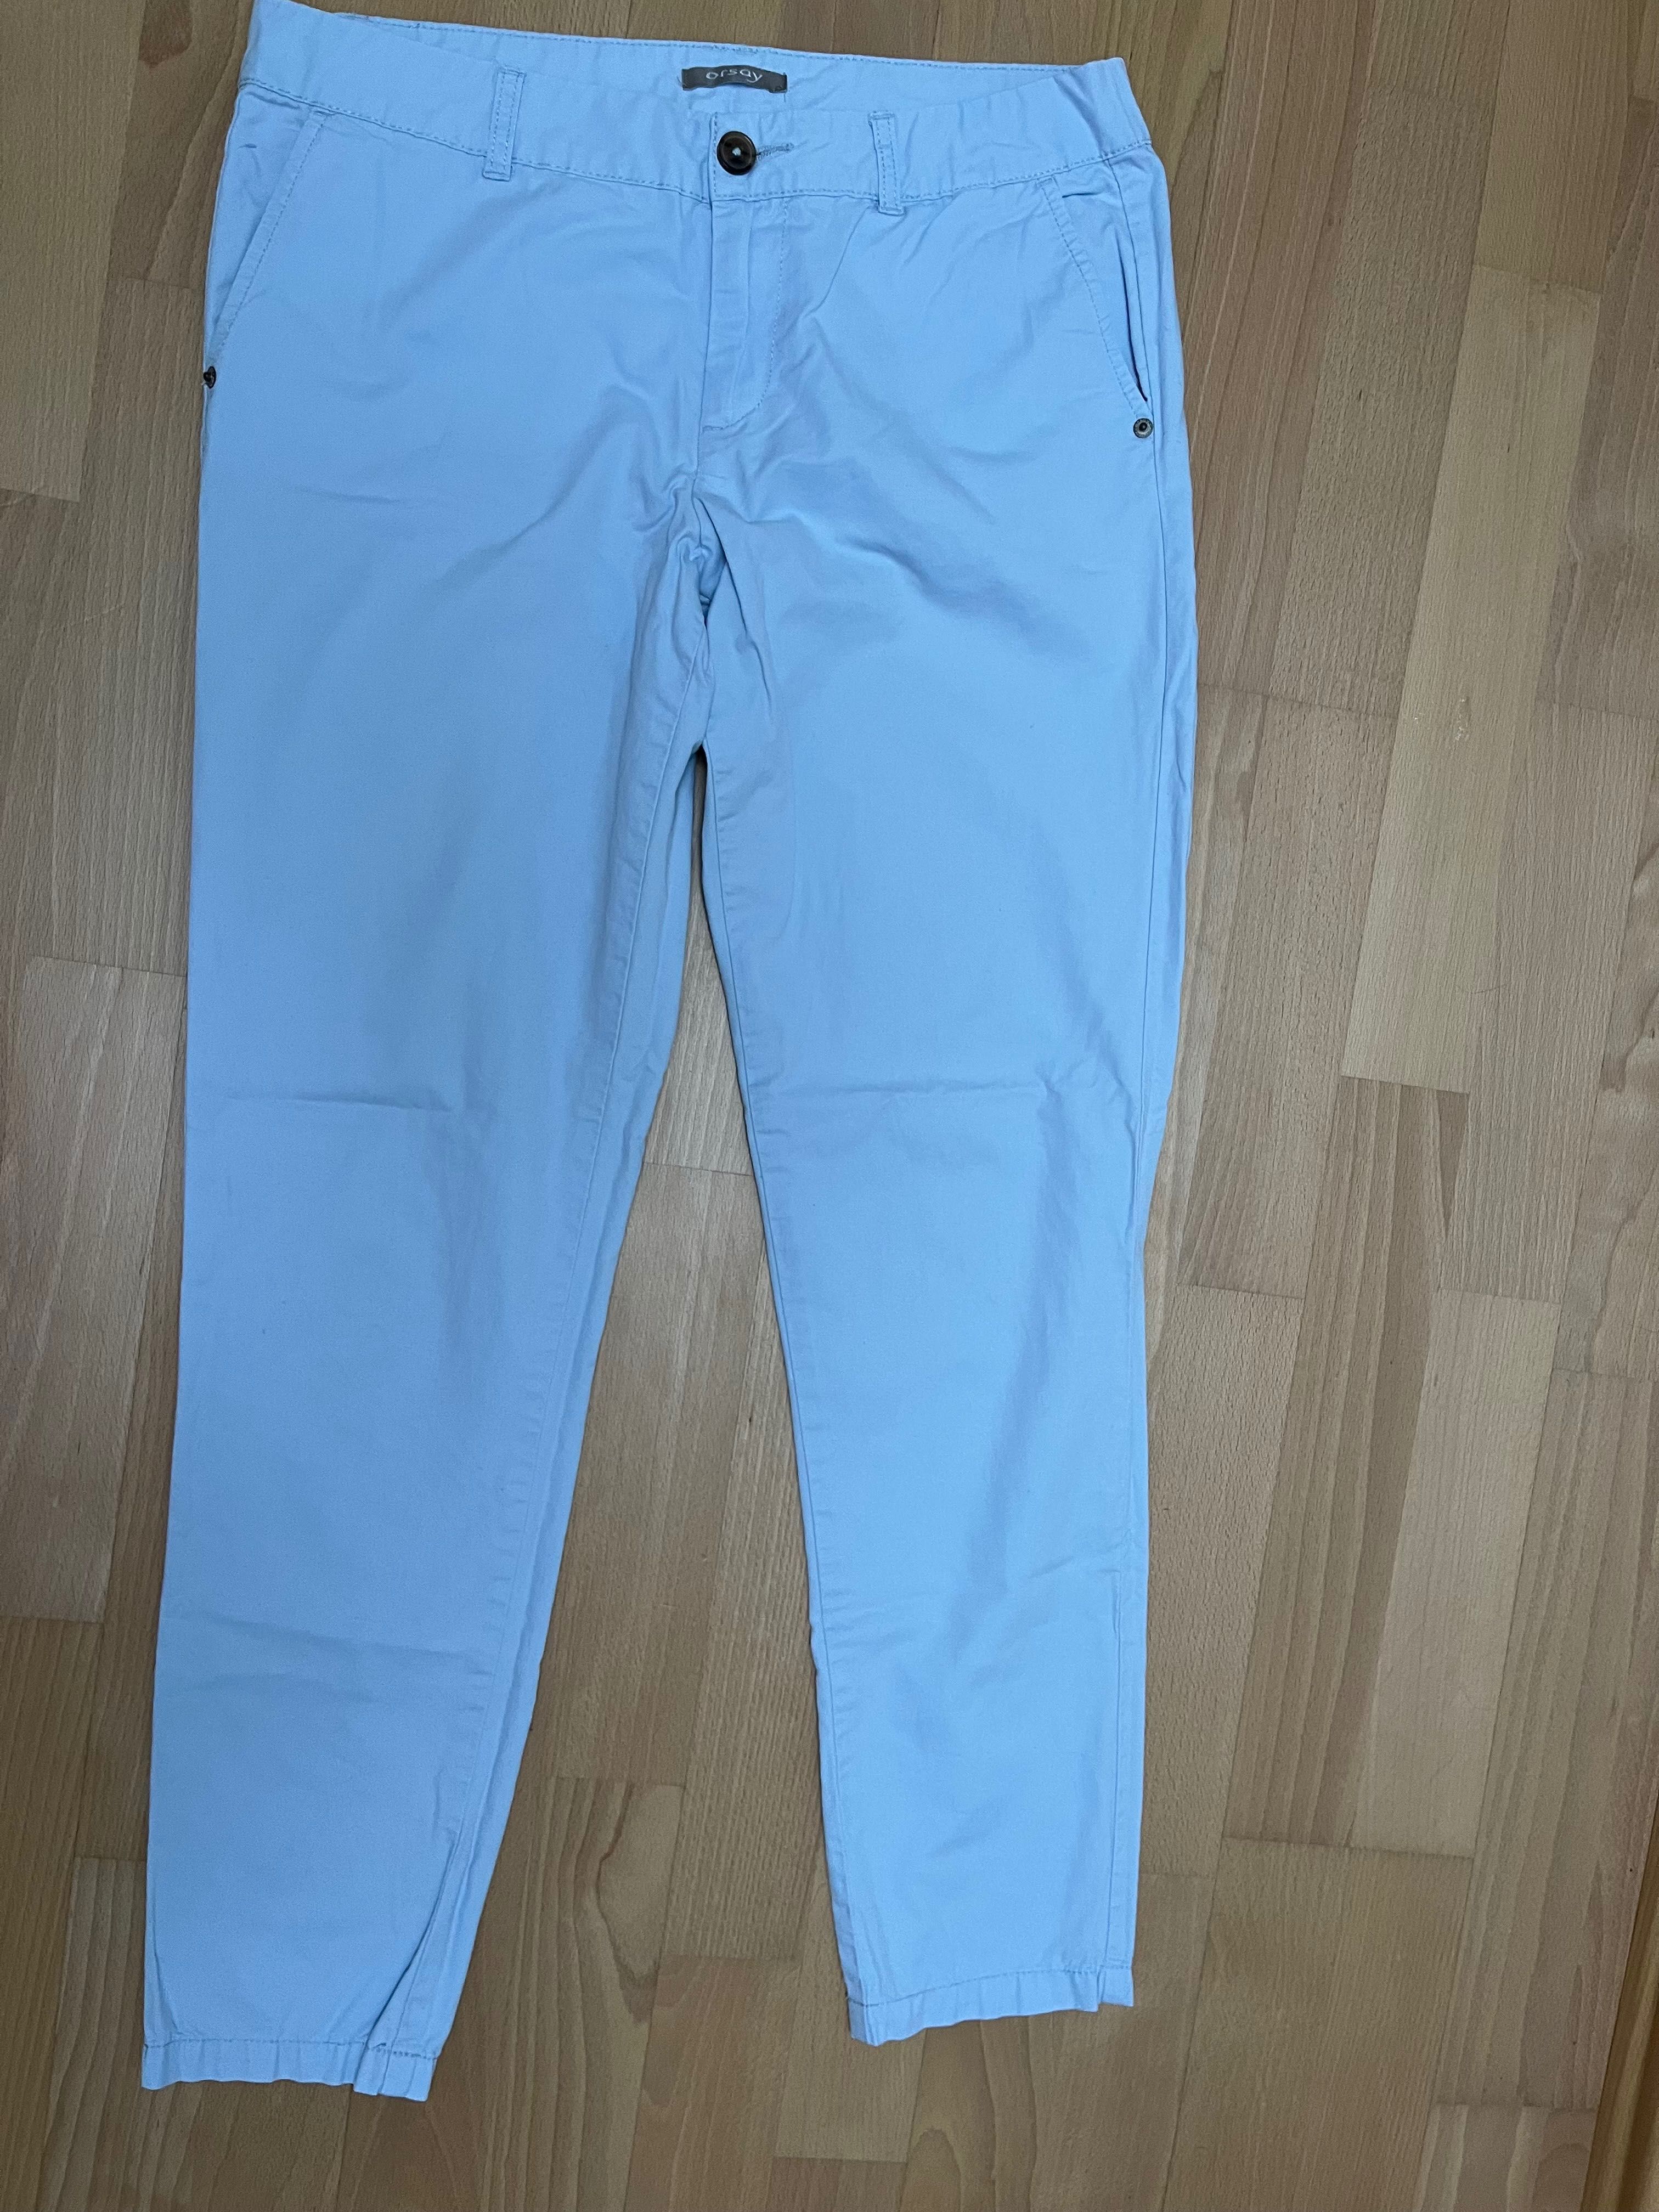 Spodnie materiałowe damskie Orsay, jasny niebieski, rozm 36